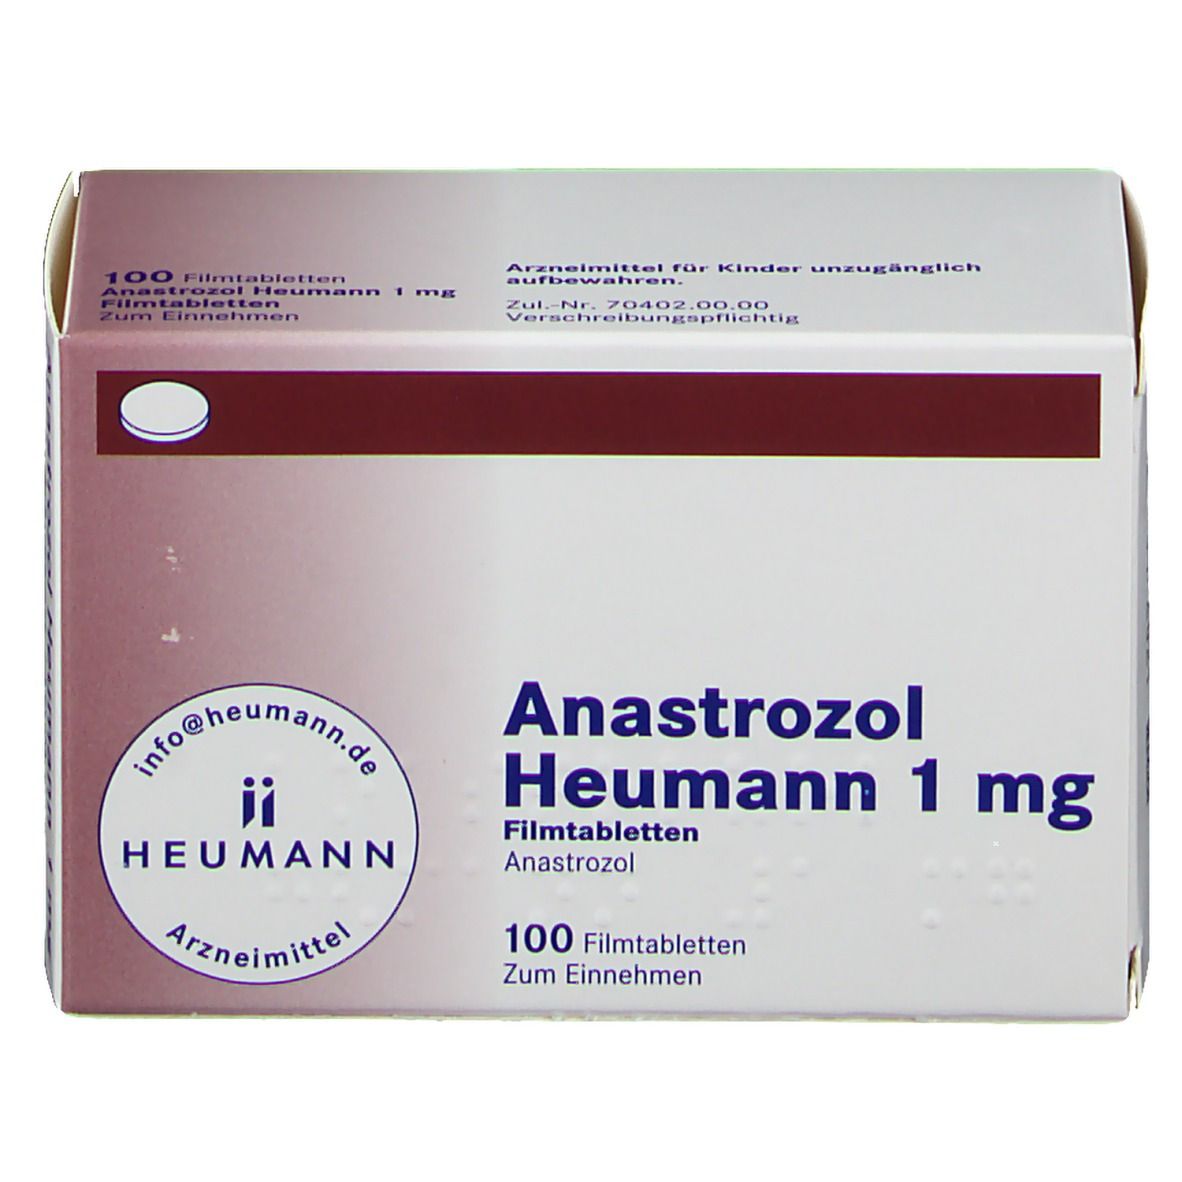 Anastrozol Heumann 1 mg Filmtabletten